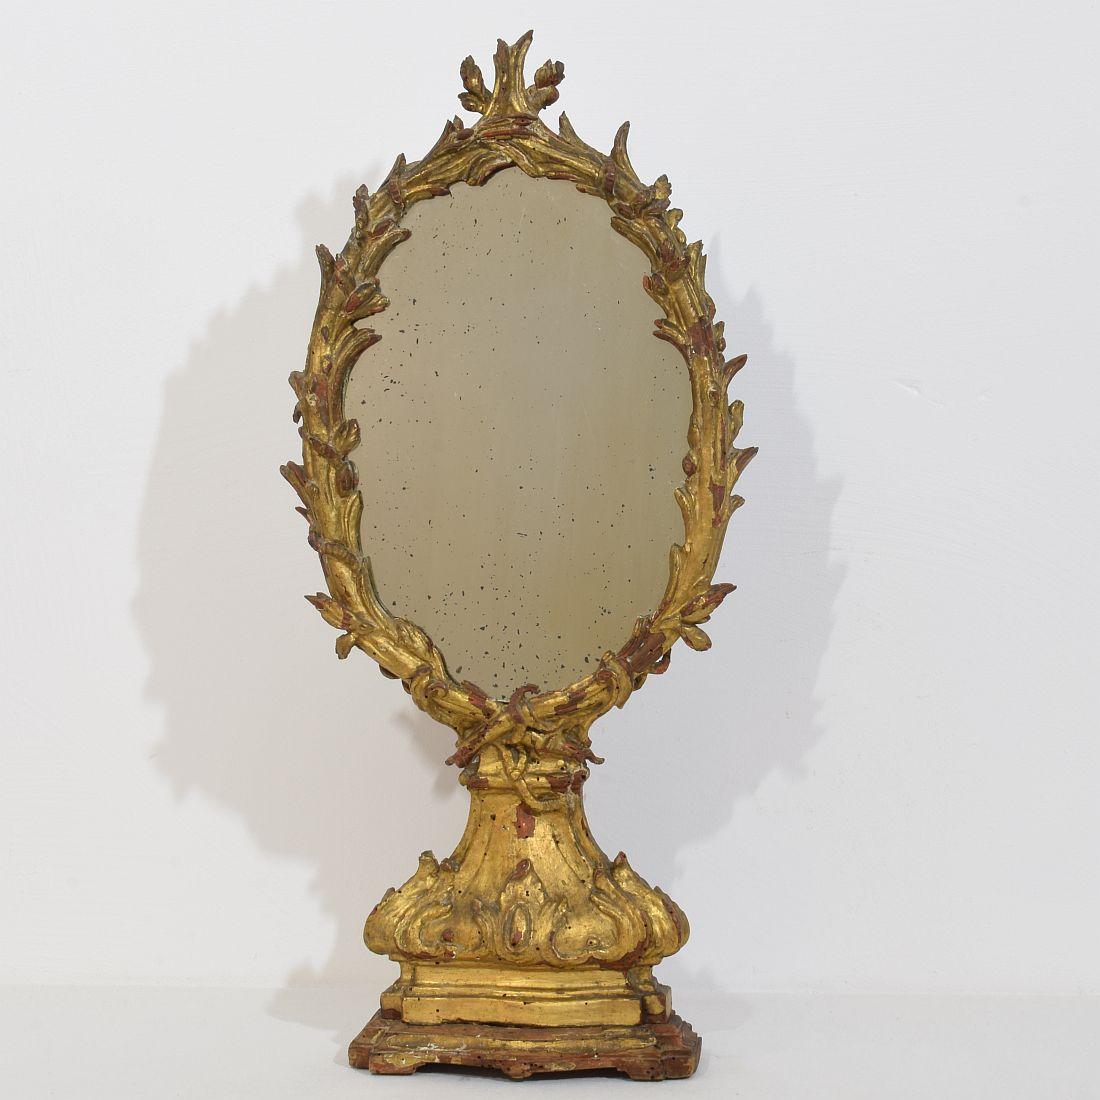 Merveilleux et unique miroir baroque en bois sculpté et doré, avec une belle patine friable, Italie, vers 1750. Belle usure du temps, petites pertes et réparations anciennes. Malgré son âge élevé, elle est en relativement bon état. Traitée contre